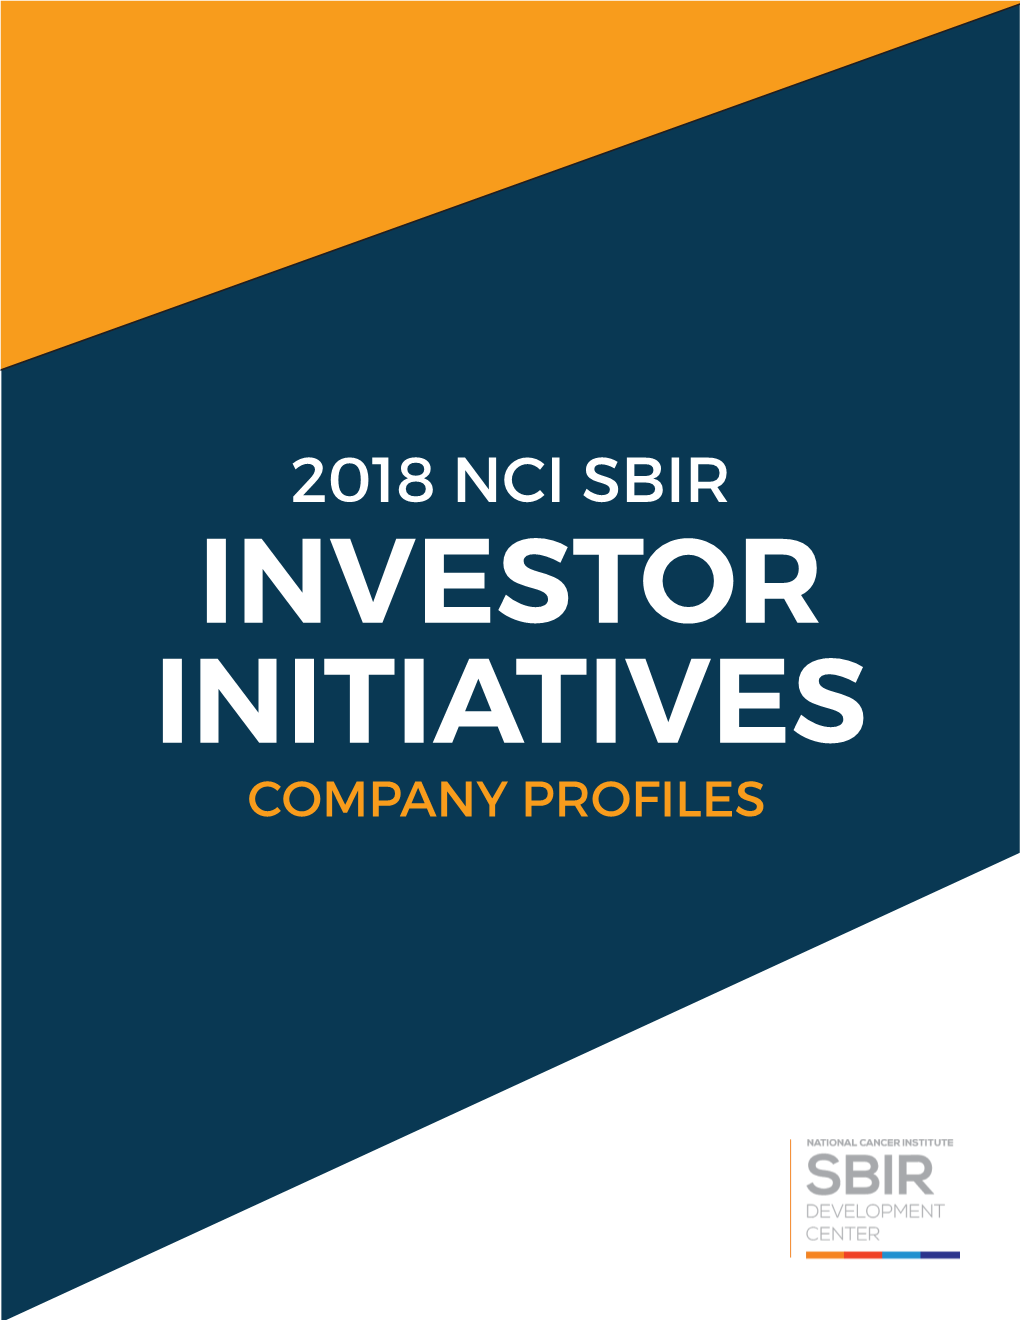 2018 NCI SBIR INVESTOR INITIATIVES COMPANY PROFILES Short Summary of Company